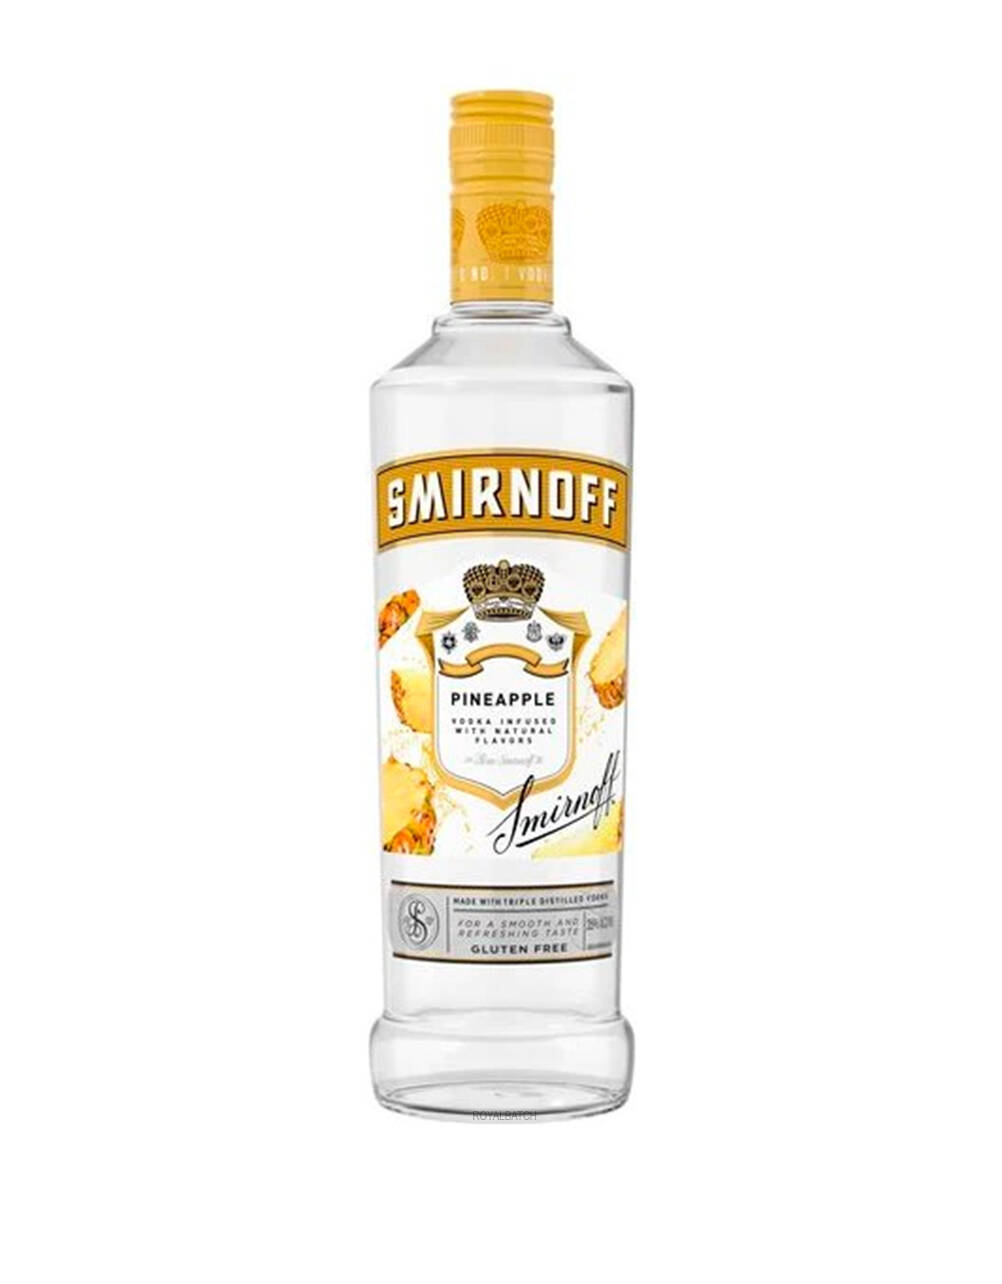 Smirnoff Pineapple Infused Flavored Vodka 50ml